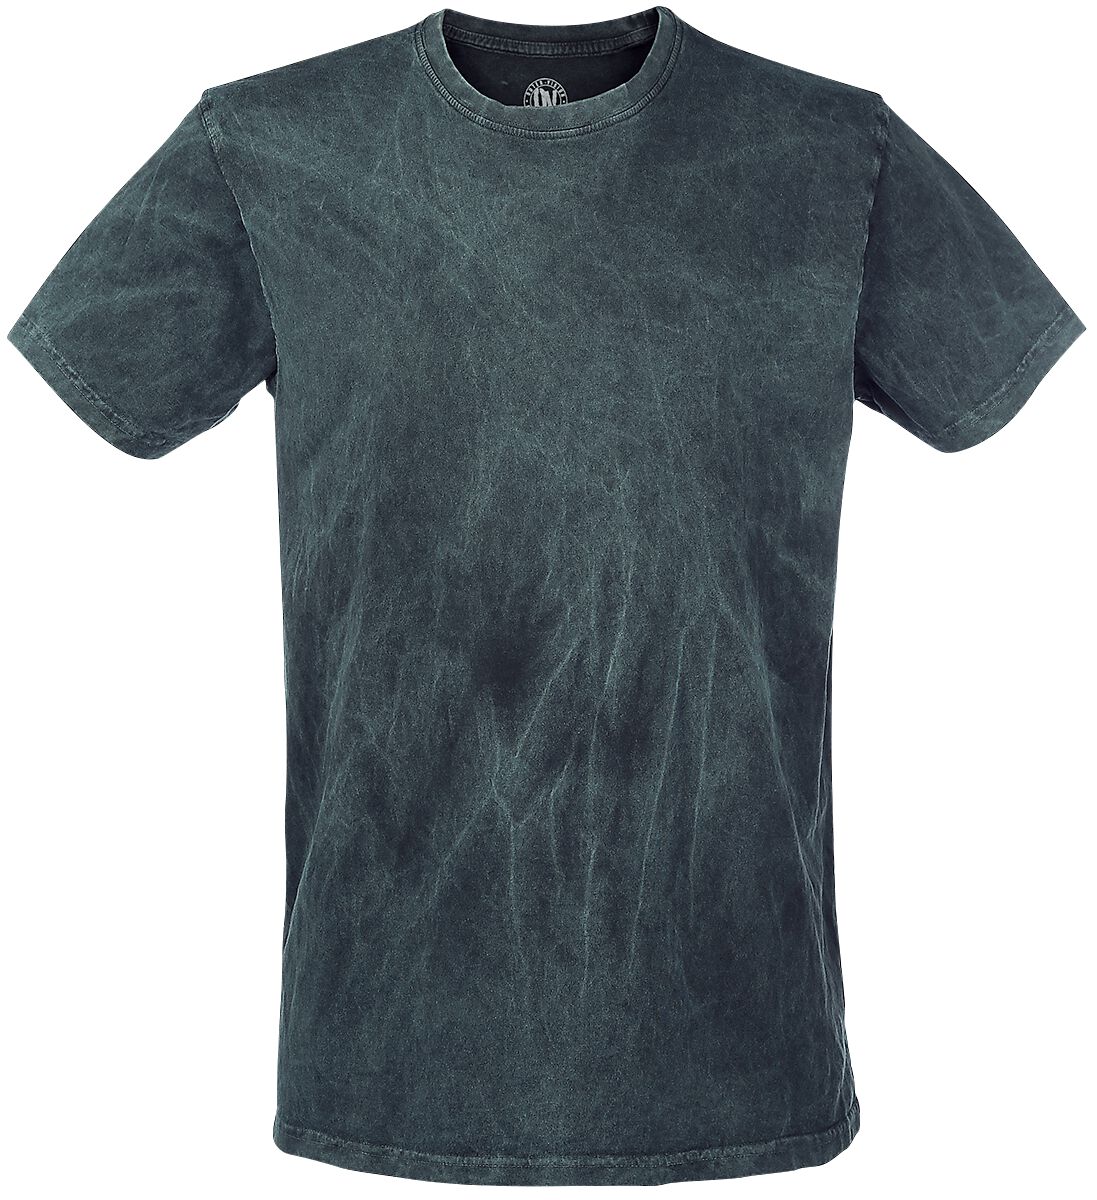 Outer Vision T-Shirt - Vintage - S bis XXL - für Männer - Größe M - petrol